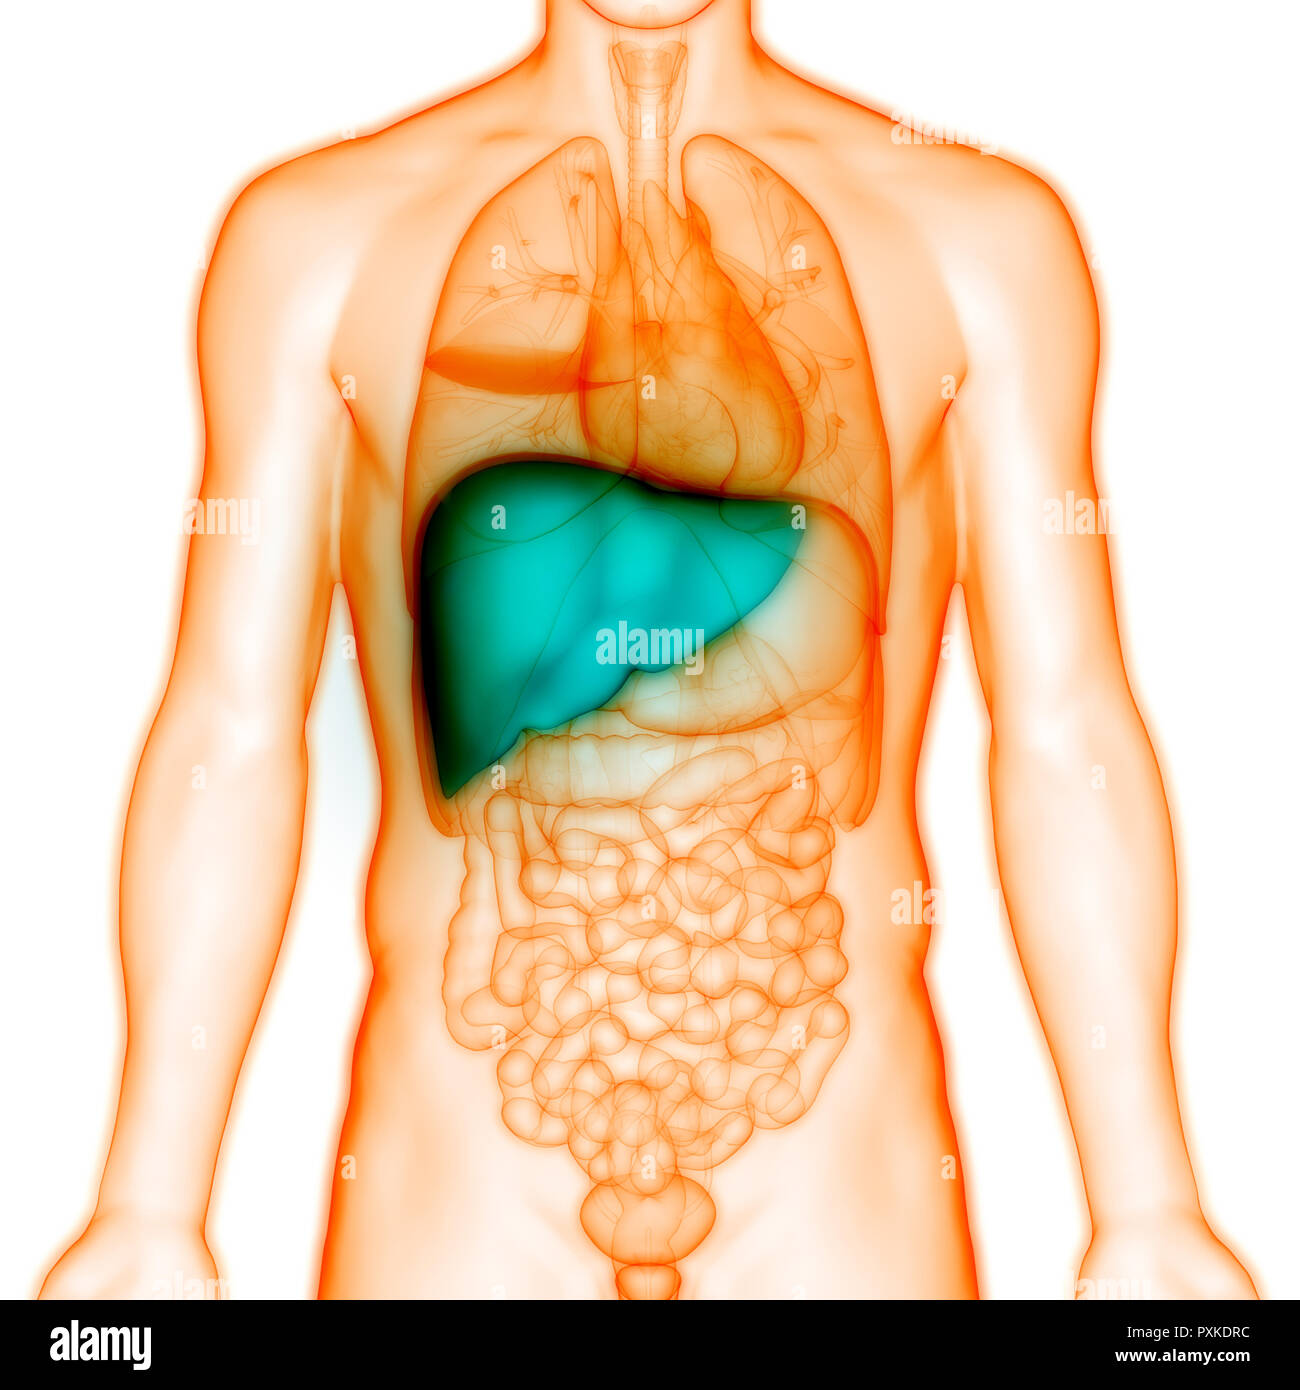 Печень находится у человека фото. Расположение печени в организме. Внутренние органы человека печень. Анатомическое расположение печени.